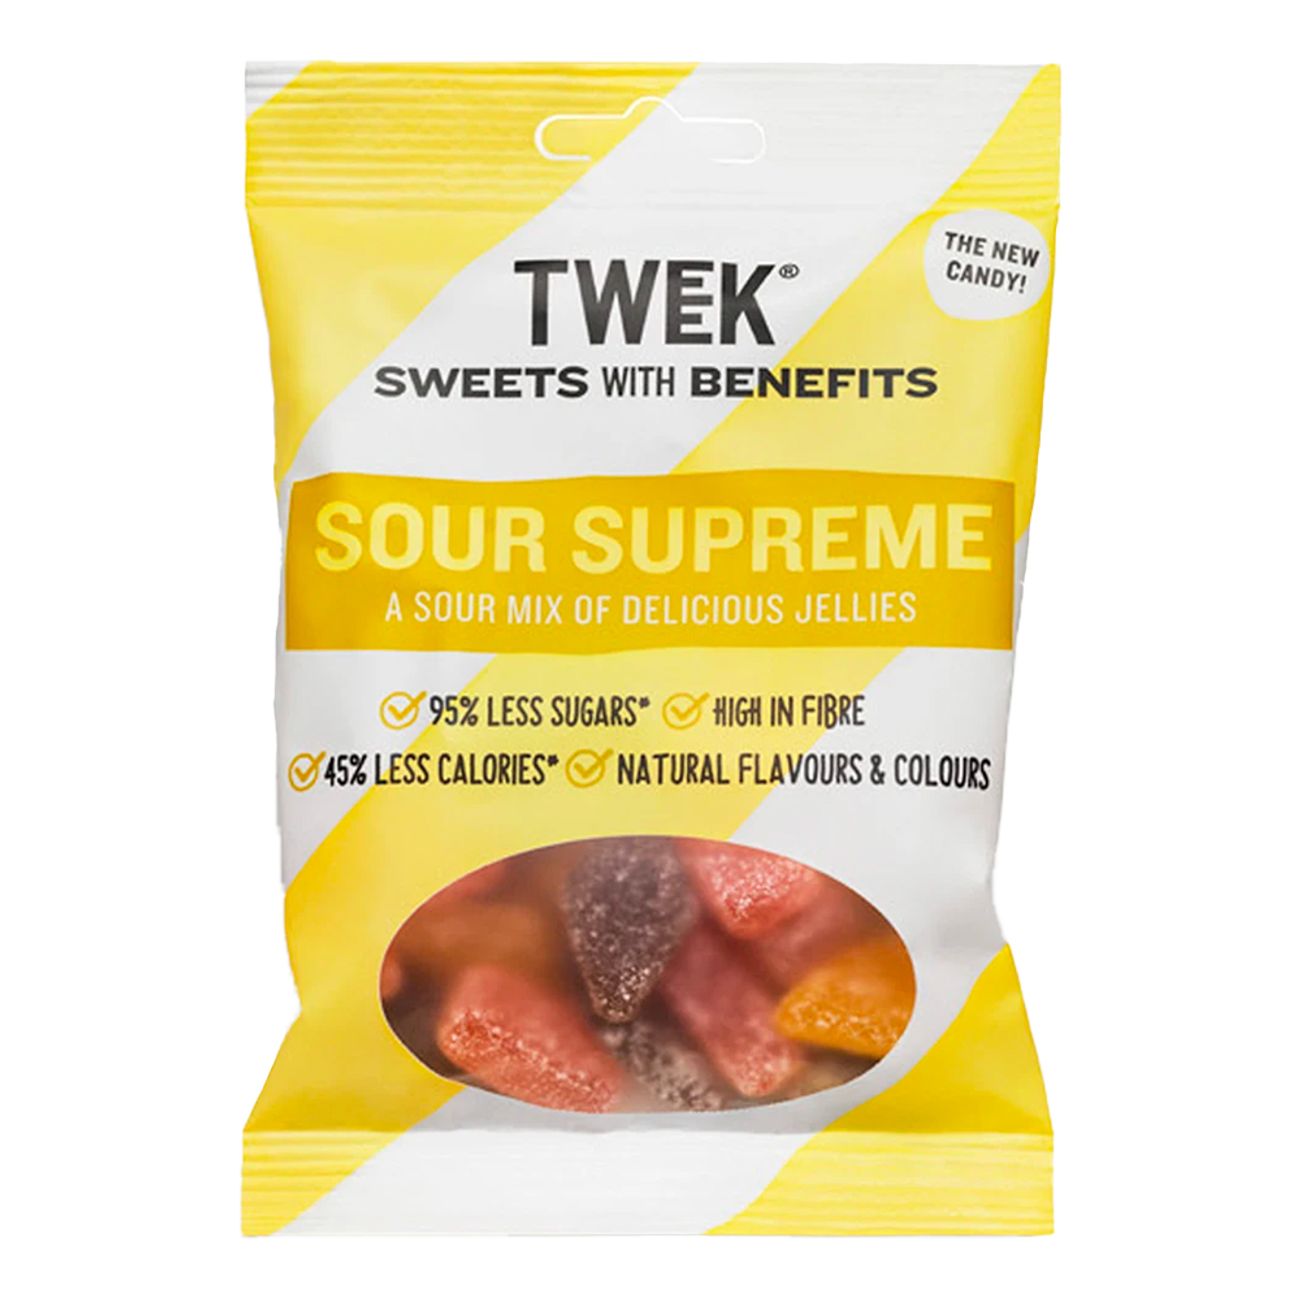 tweek-sour-supreme-73245-1